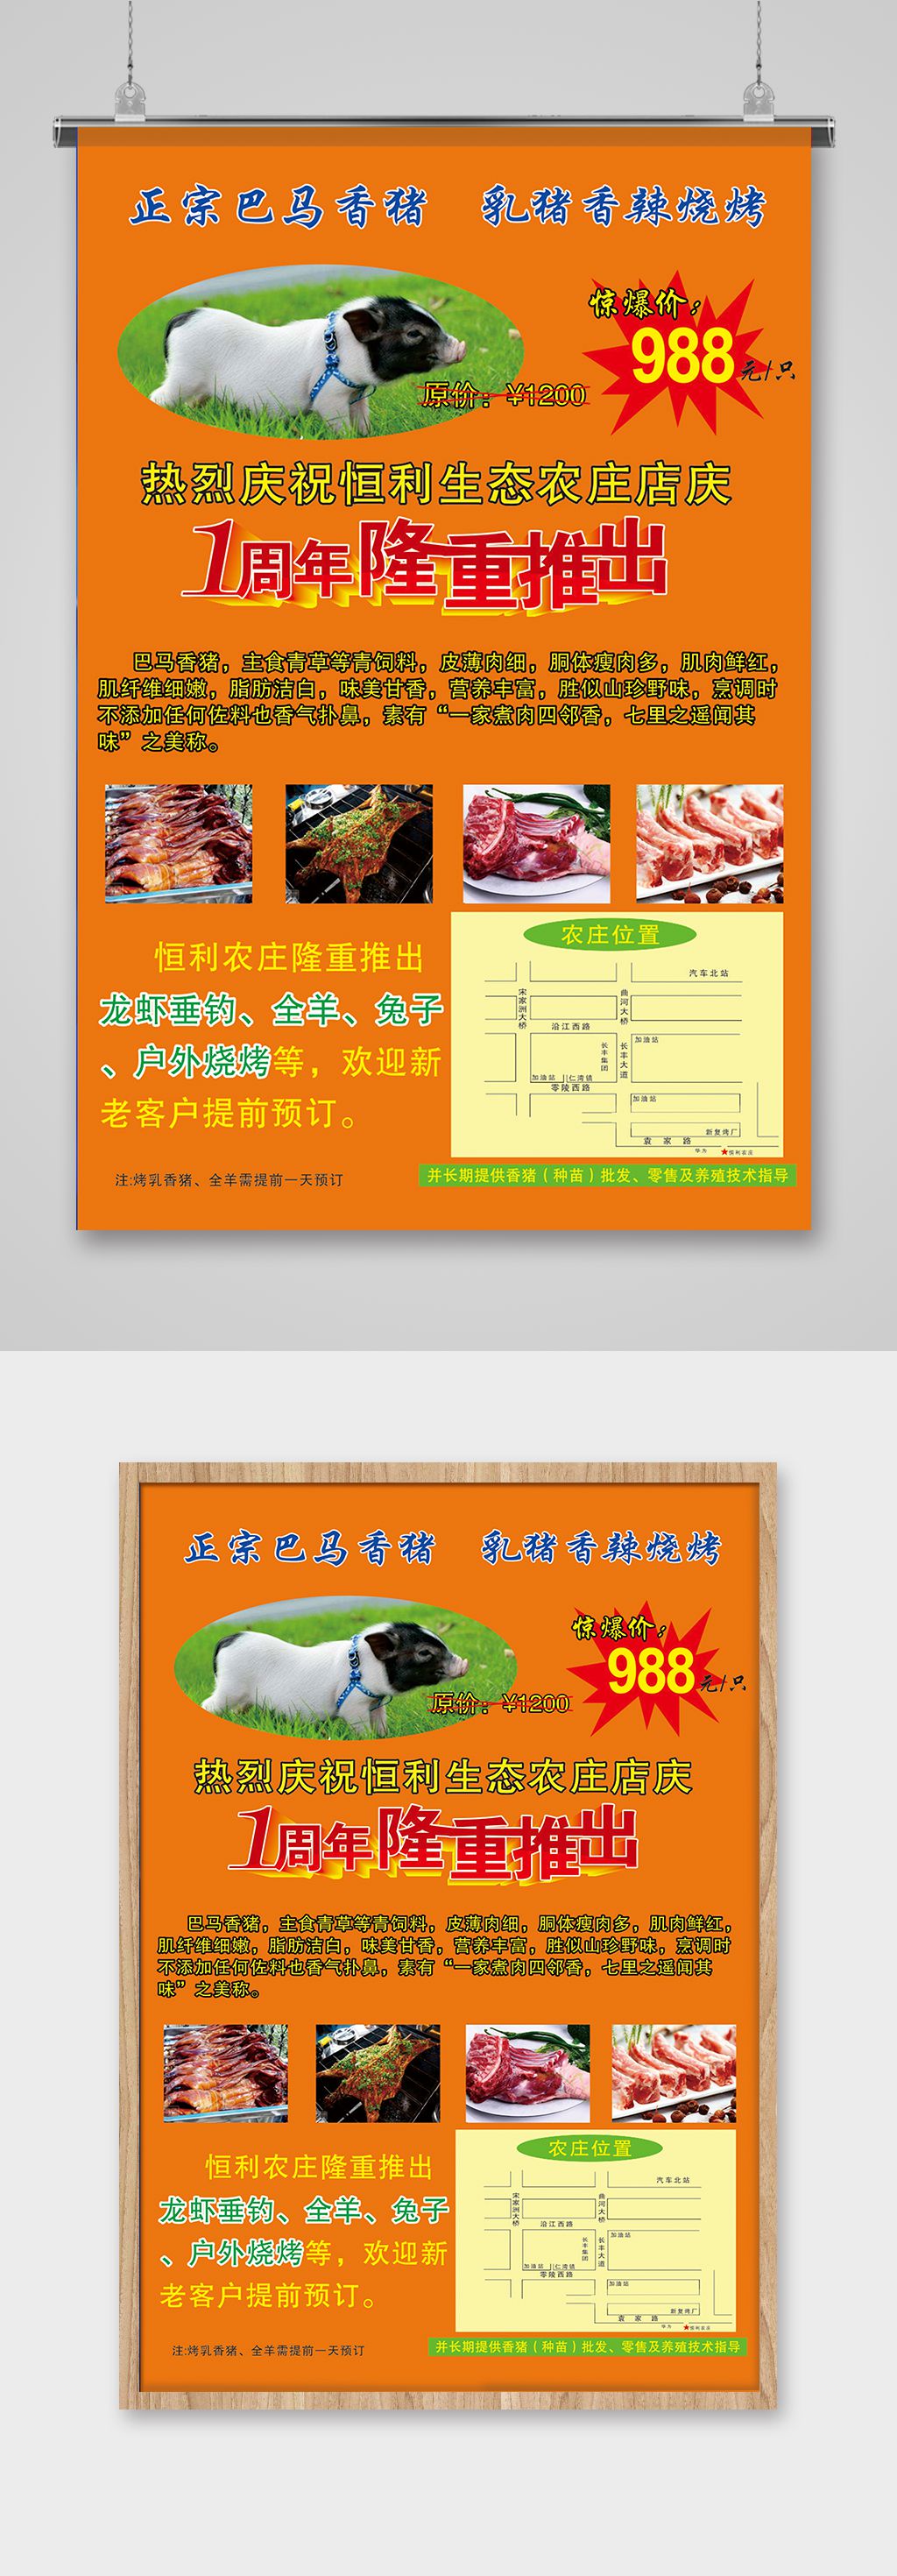 烤乳猪广告台词图片